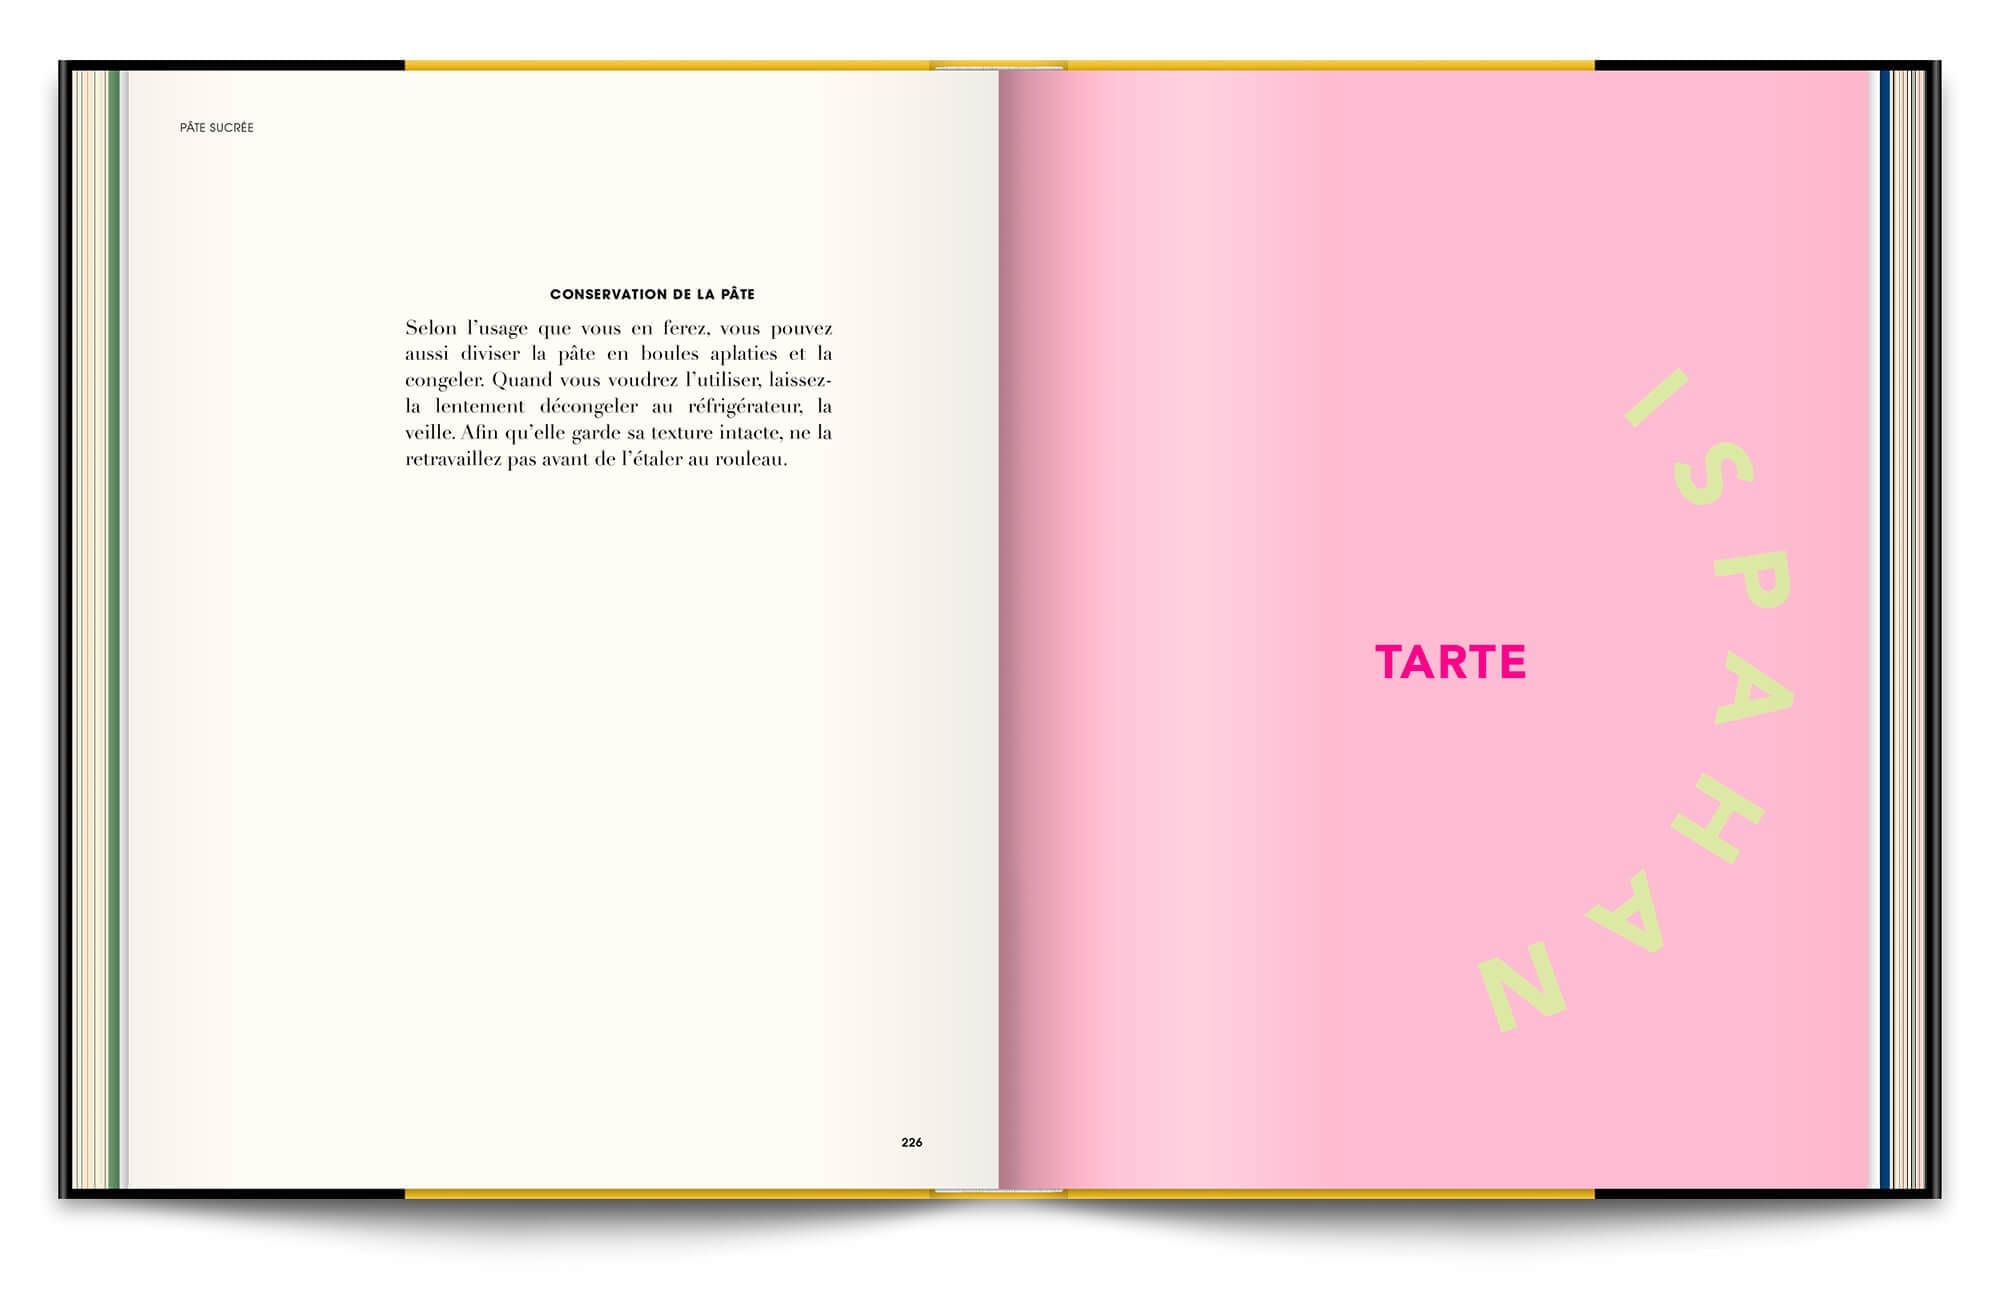 Le livre Infiniment de Pierre Hermé, typographie expressive en rapport avec les recettes et couleurs acidulées pour la tarte Ispahan, maquette et mise en page IchetKar